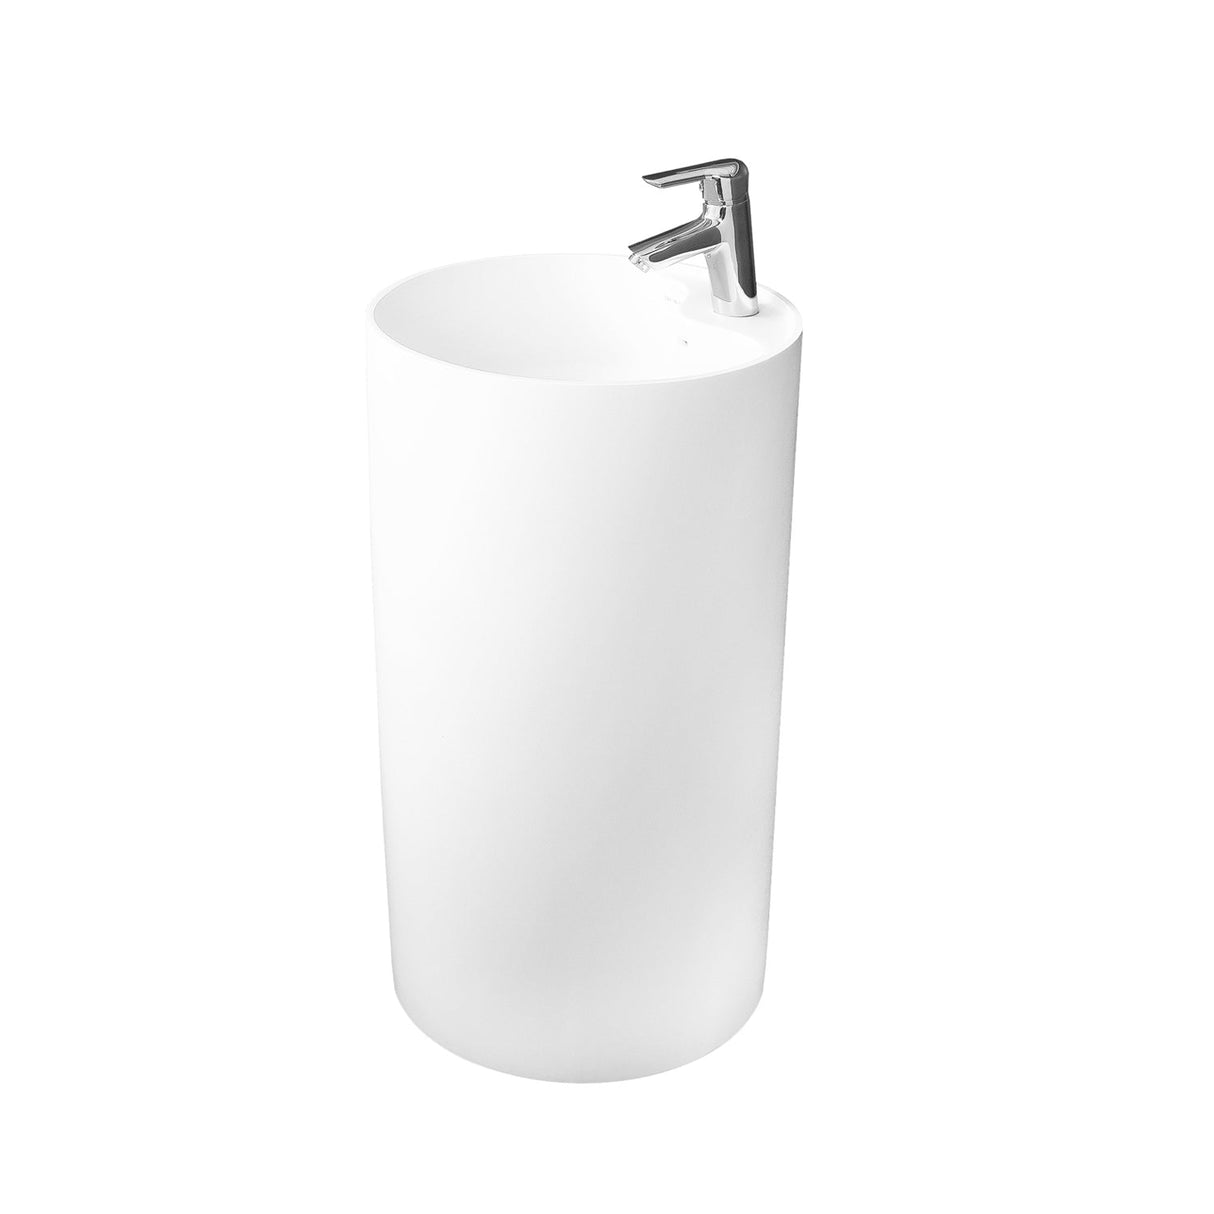 DAX Solid Surface Round Pedestal Freestanding Bathroom Basin, Matte White DAX-AB-1380